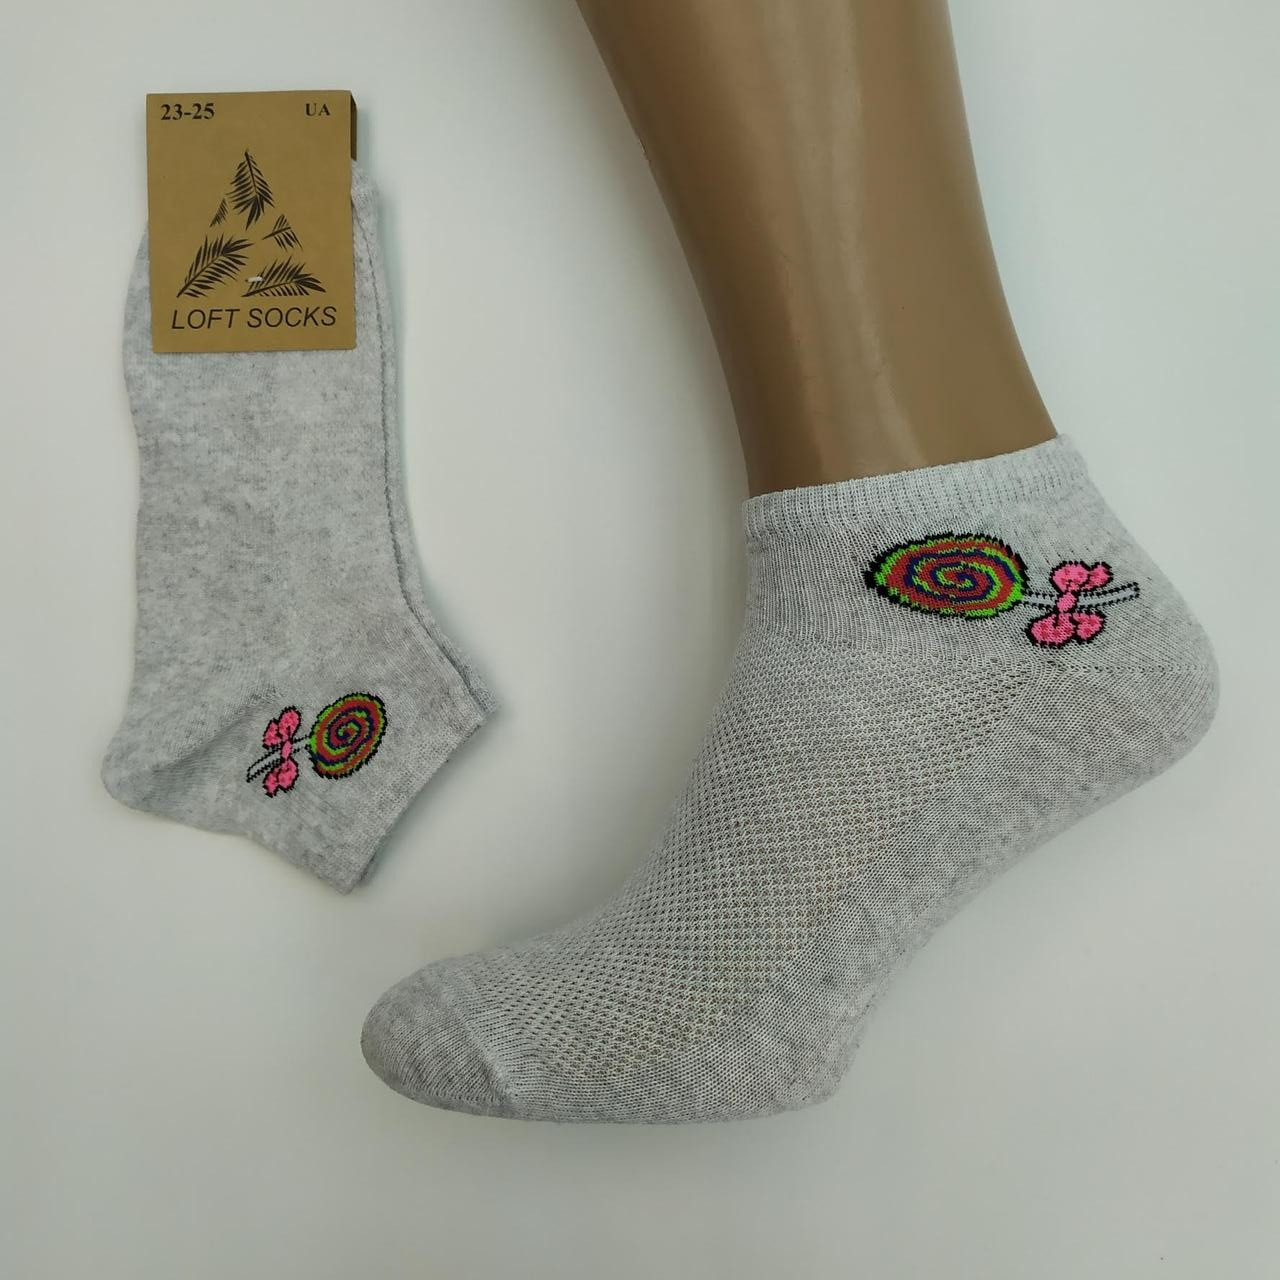 Шкарпетки жіночі літні з сіткою "Цукерка", LOFT SOCKS, р. 23-25, світло-сірі, 20016876